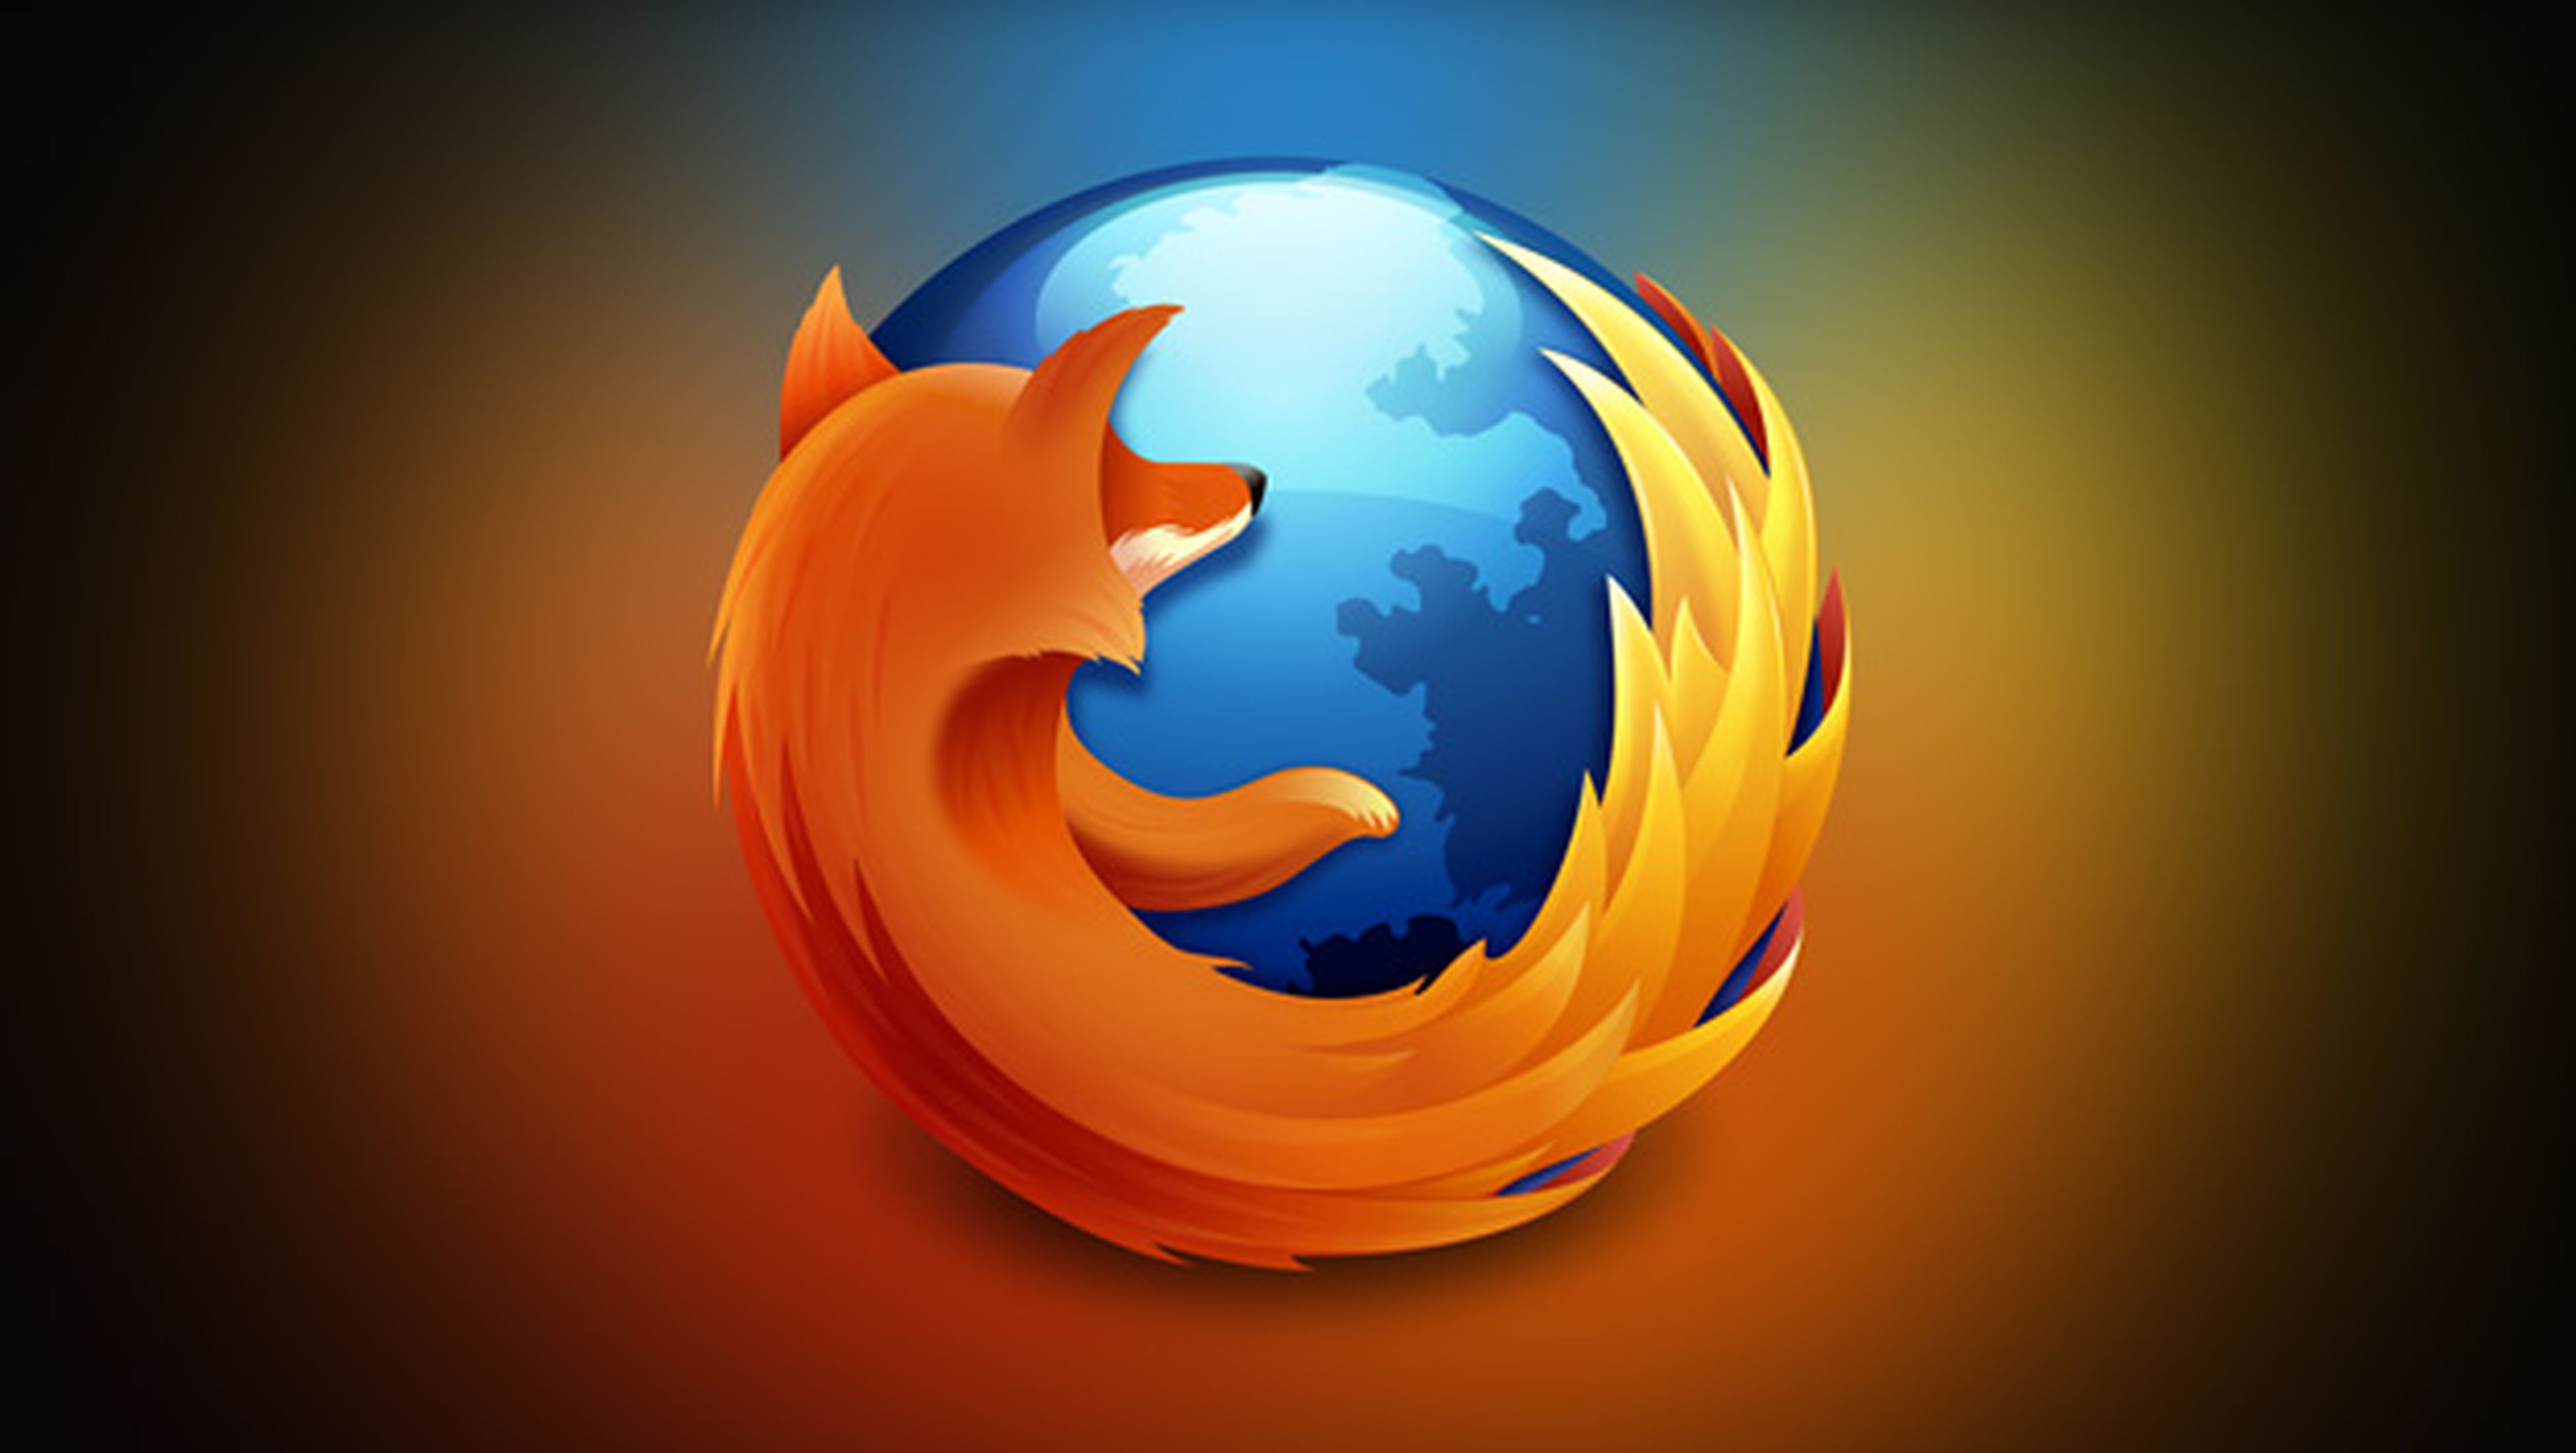 Actualización Firefox 64 bits